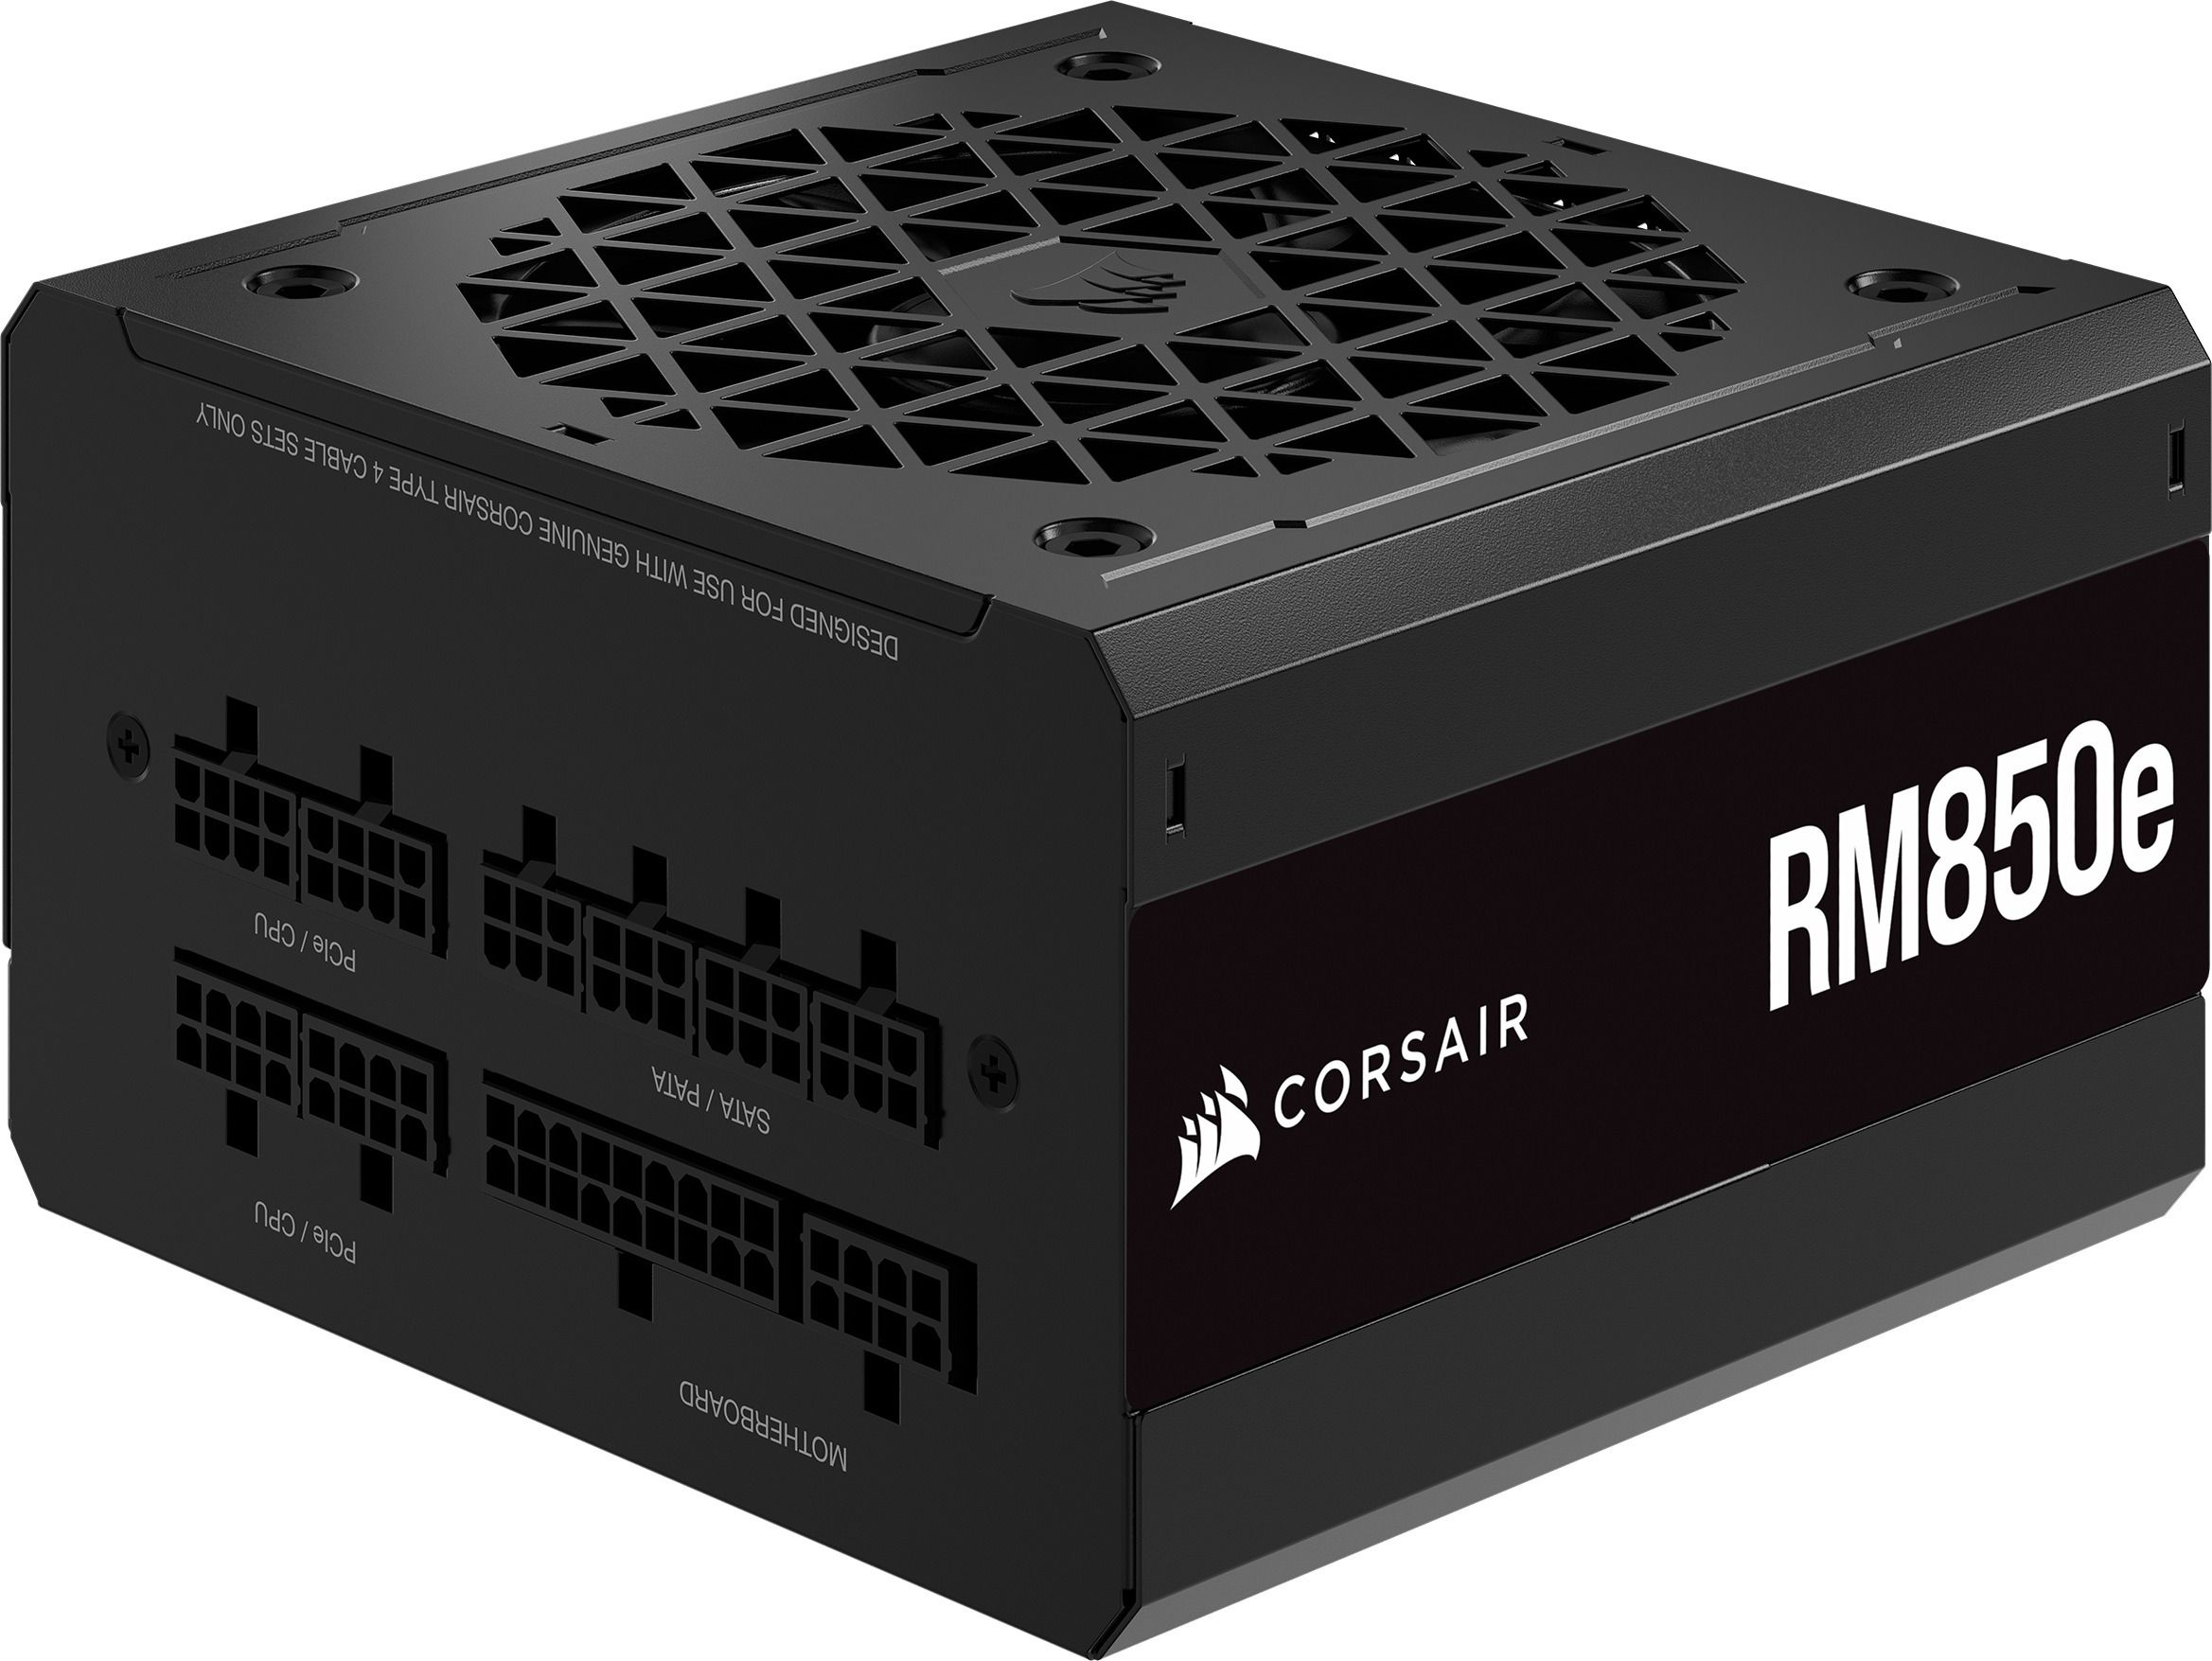 CORSAIR RM850e 850 Watt ATX 3.0 80 PLUS GOLD Certified Fully Modular Power Supply